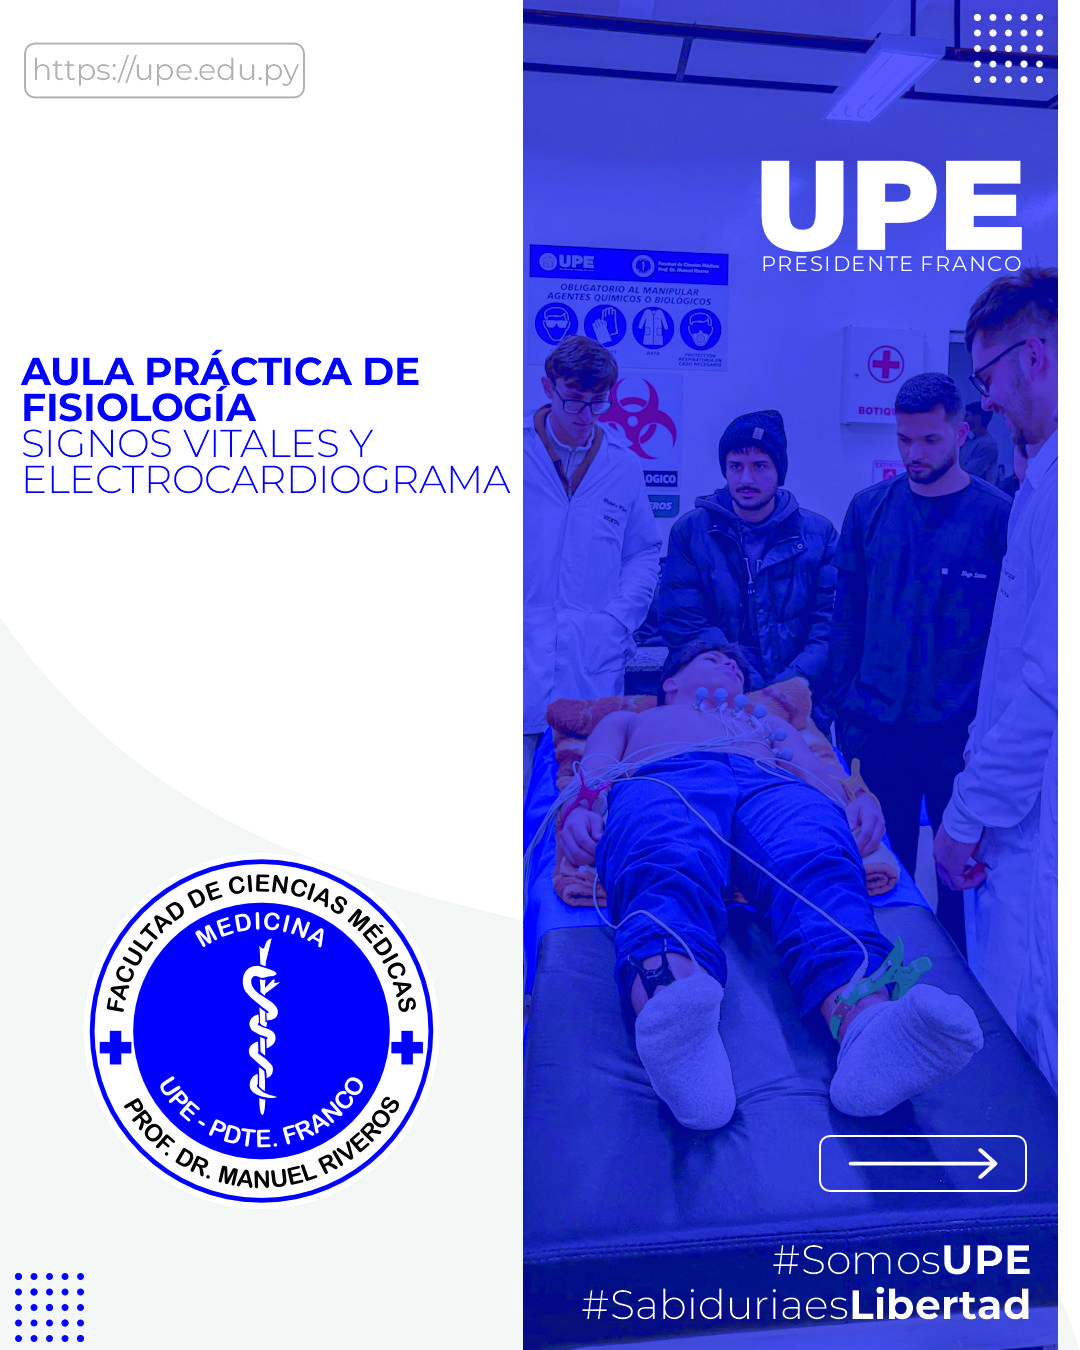 Aula Práctica de Fisiología en la UPE: Desarrollando Habilidades Médicas